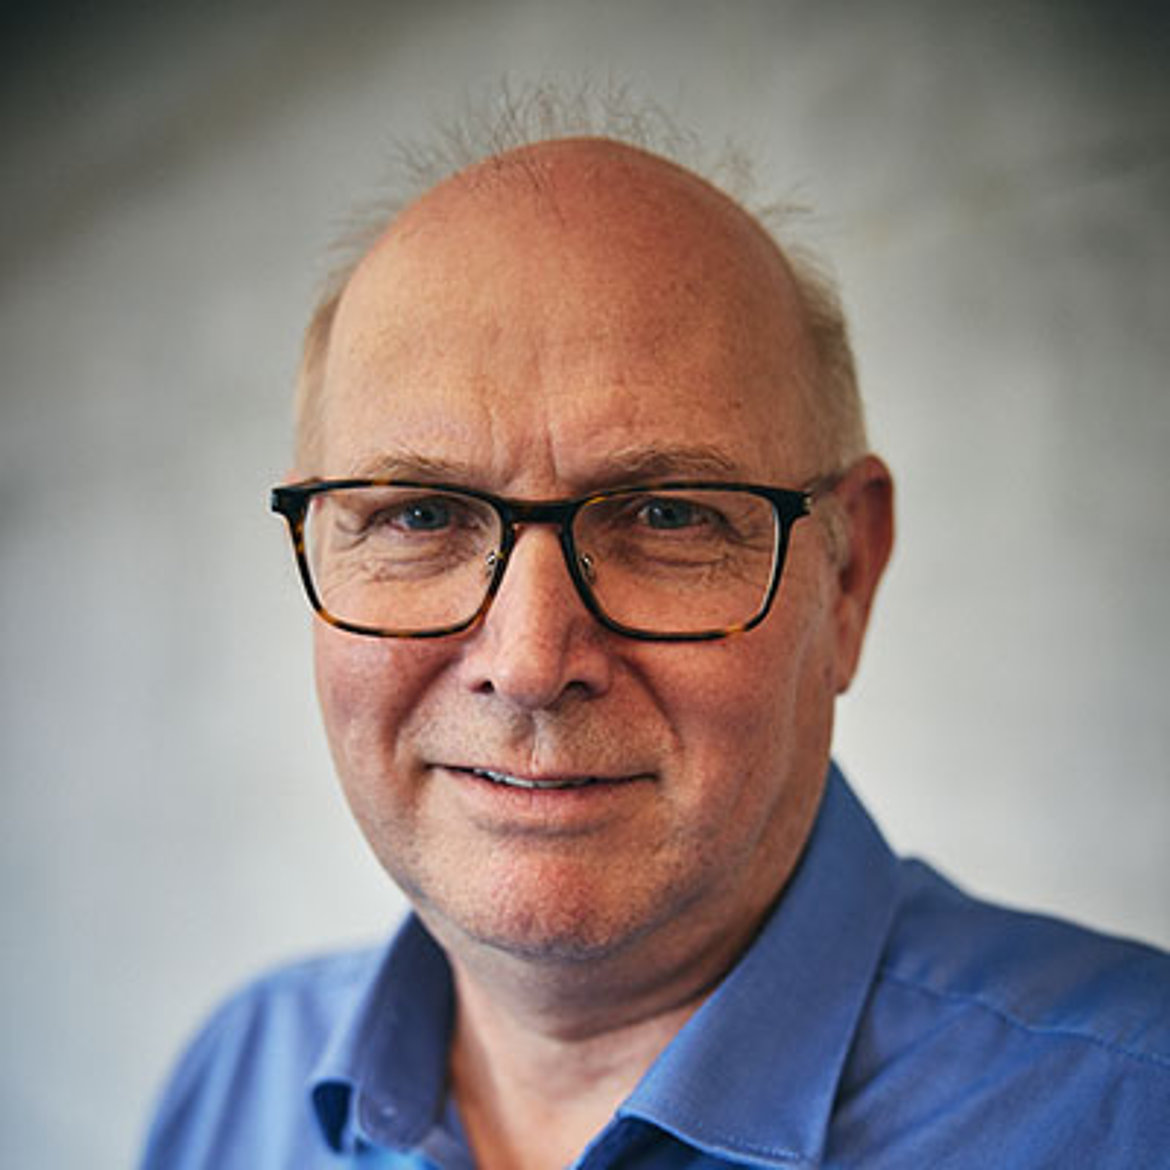 Georg Görner, Konstruktionsleiter bei der STORZ MEDICAL AG.